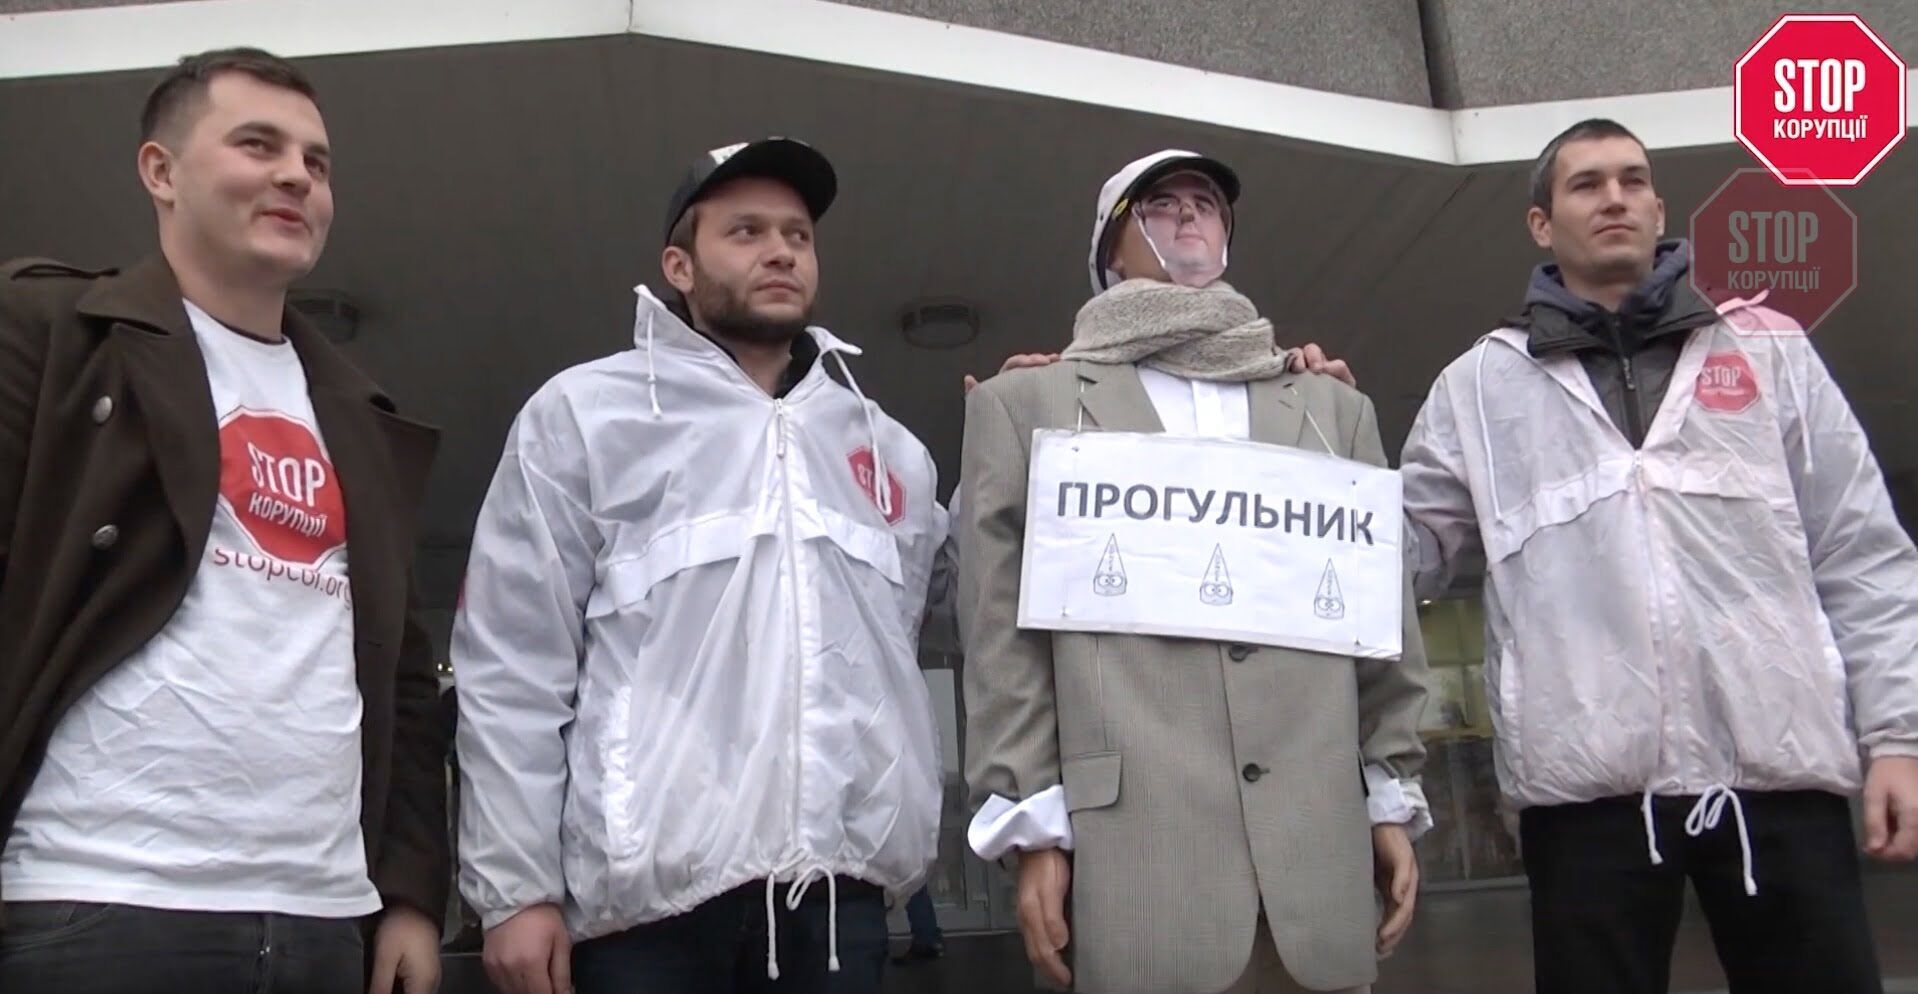  Депутатам Дніпровської міськради нагадали, як вигладає їх колега-прогульник Мішалов